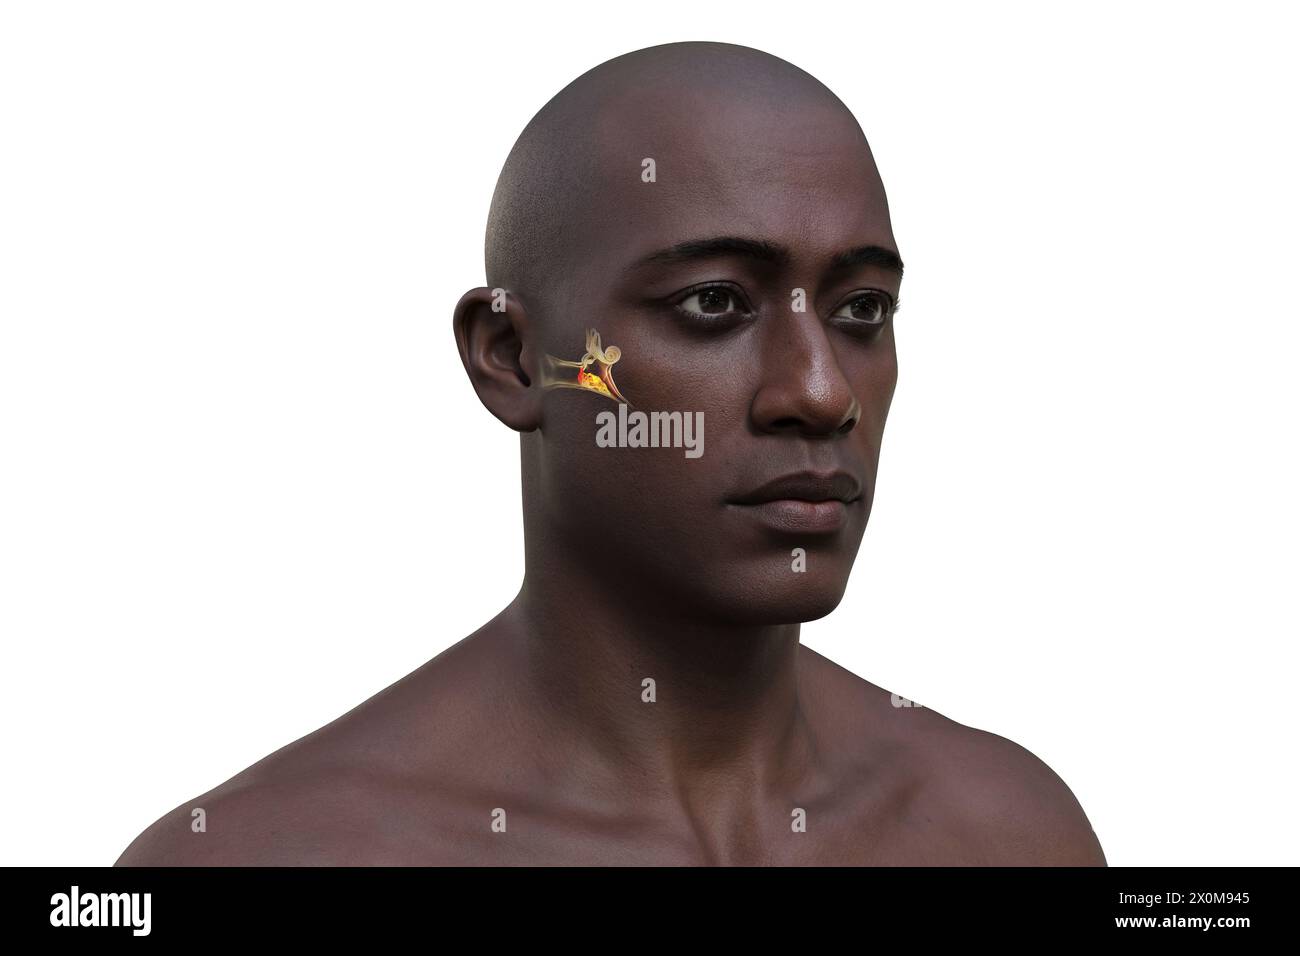 3D-Illustration eines Mannes mit einer Infektion des Mittelohrs, bekannt als Otitis Media. Dies verursacht Entzündungen, Flüssigkeitsansammlungen und Schmerzen im Ohr. Stockfoto